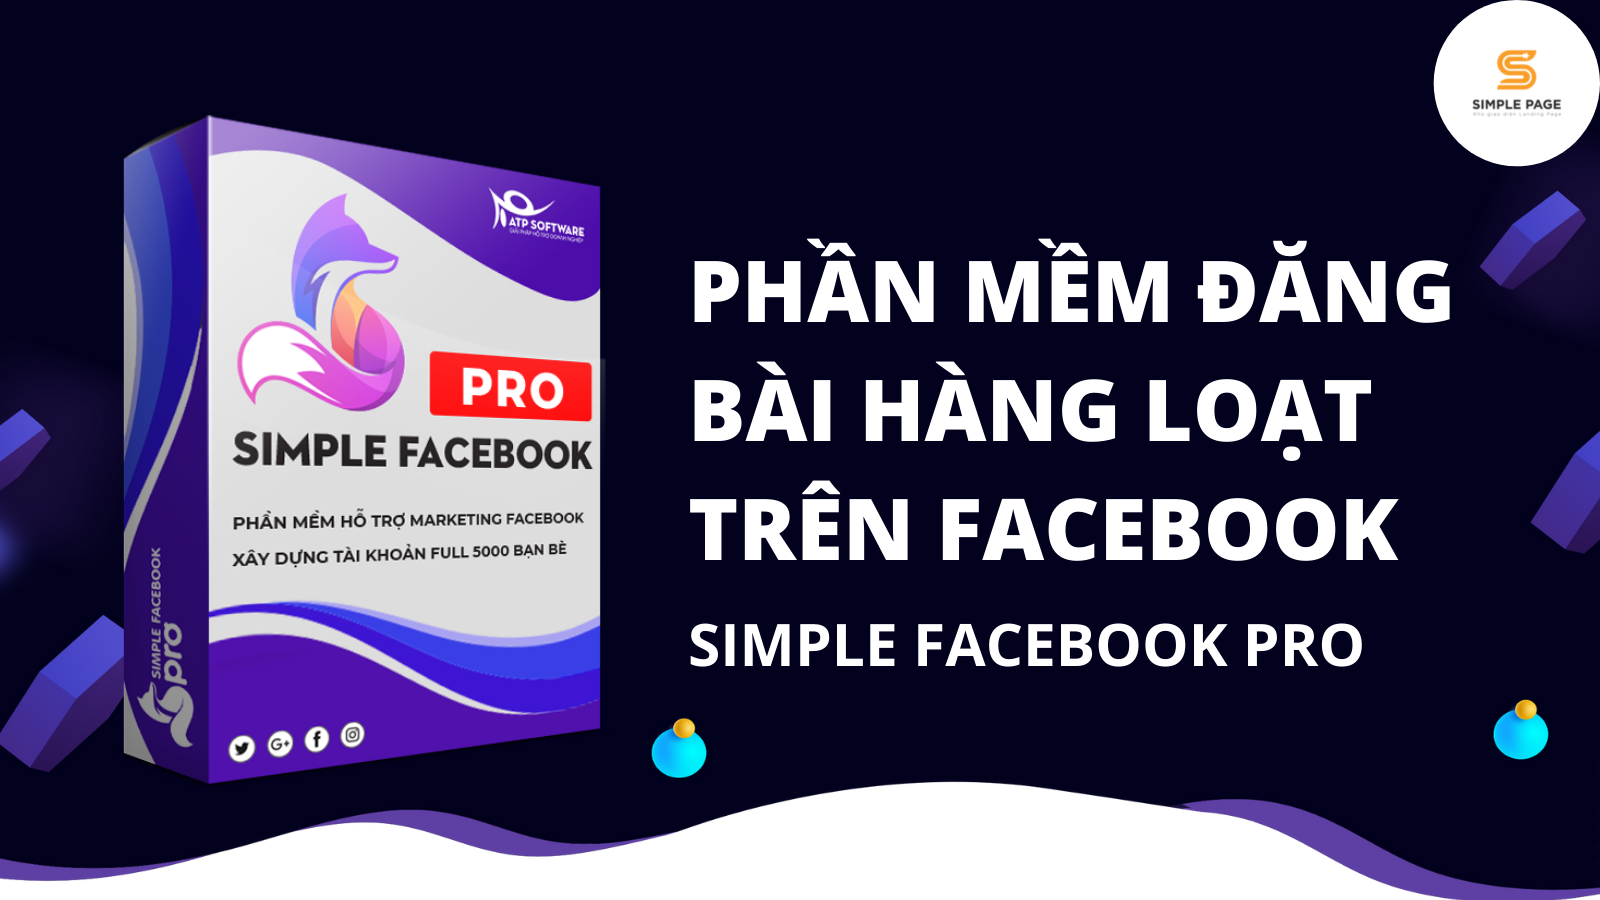 Simple Facebook Pro